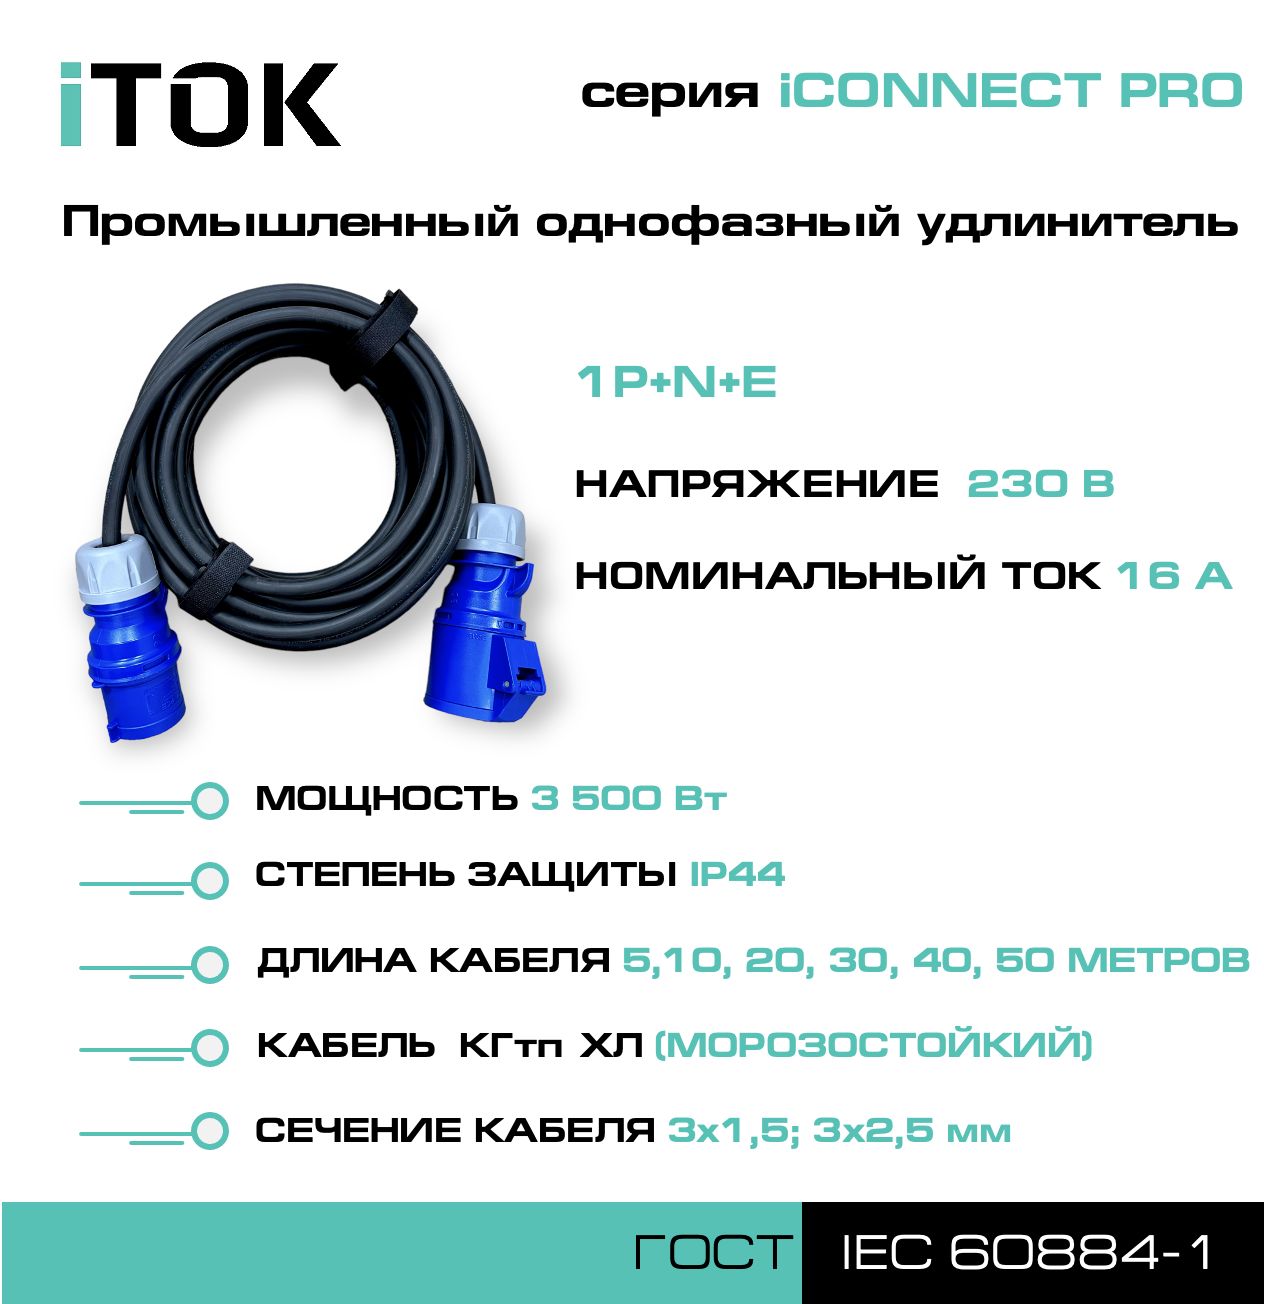 удлинитель силовой с заземлением itok iconnect pro кгтп хл 3х2 5 мм 1 гнездо ip54 5м Удлинитель силовой iTOK iCONNECT PRO 230В 16А 20м КГтп-ХЛ 3х2,5 мм 1P+N+E, IP44